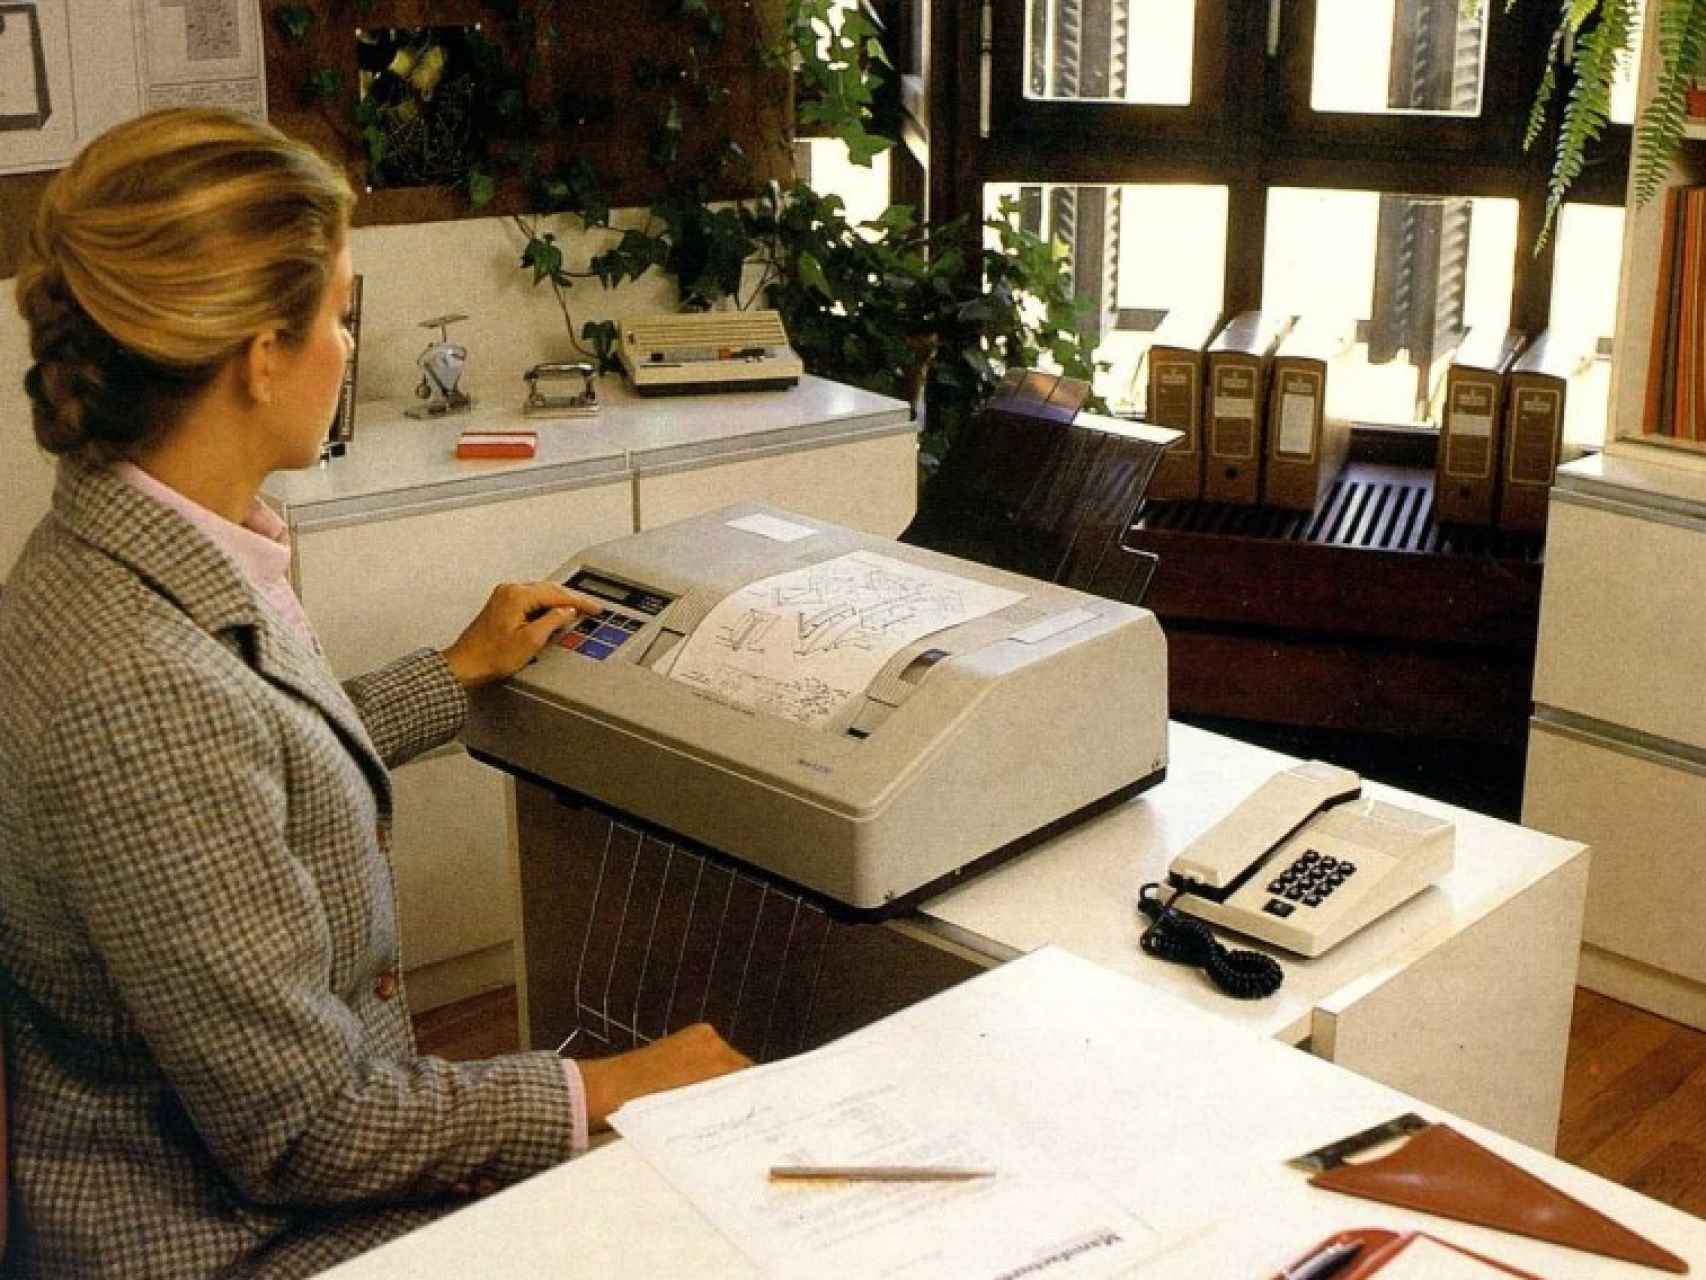 Así eran las primeras máquinas de fax que comercializaba Telefónica.